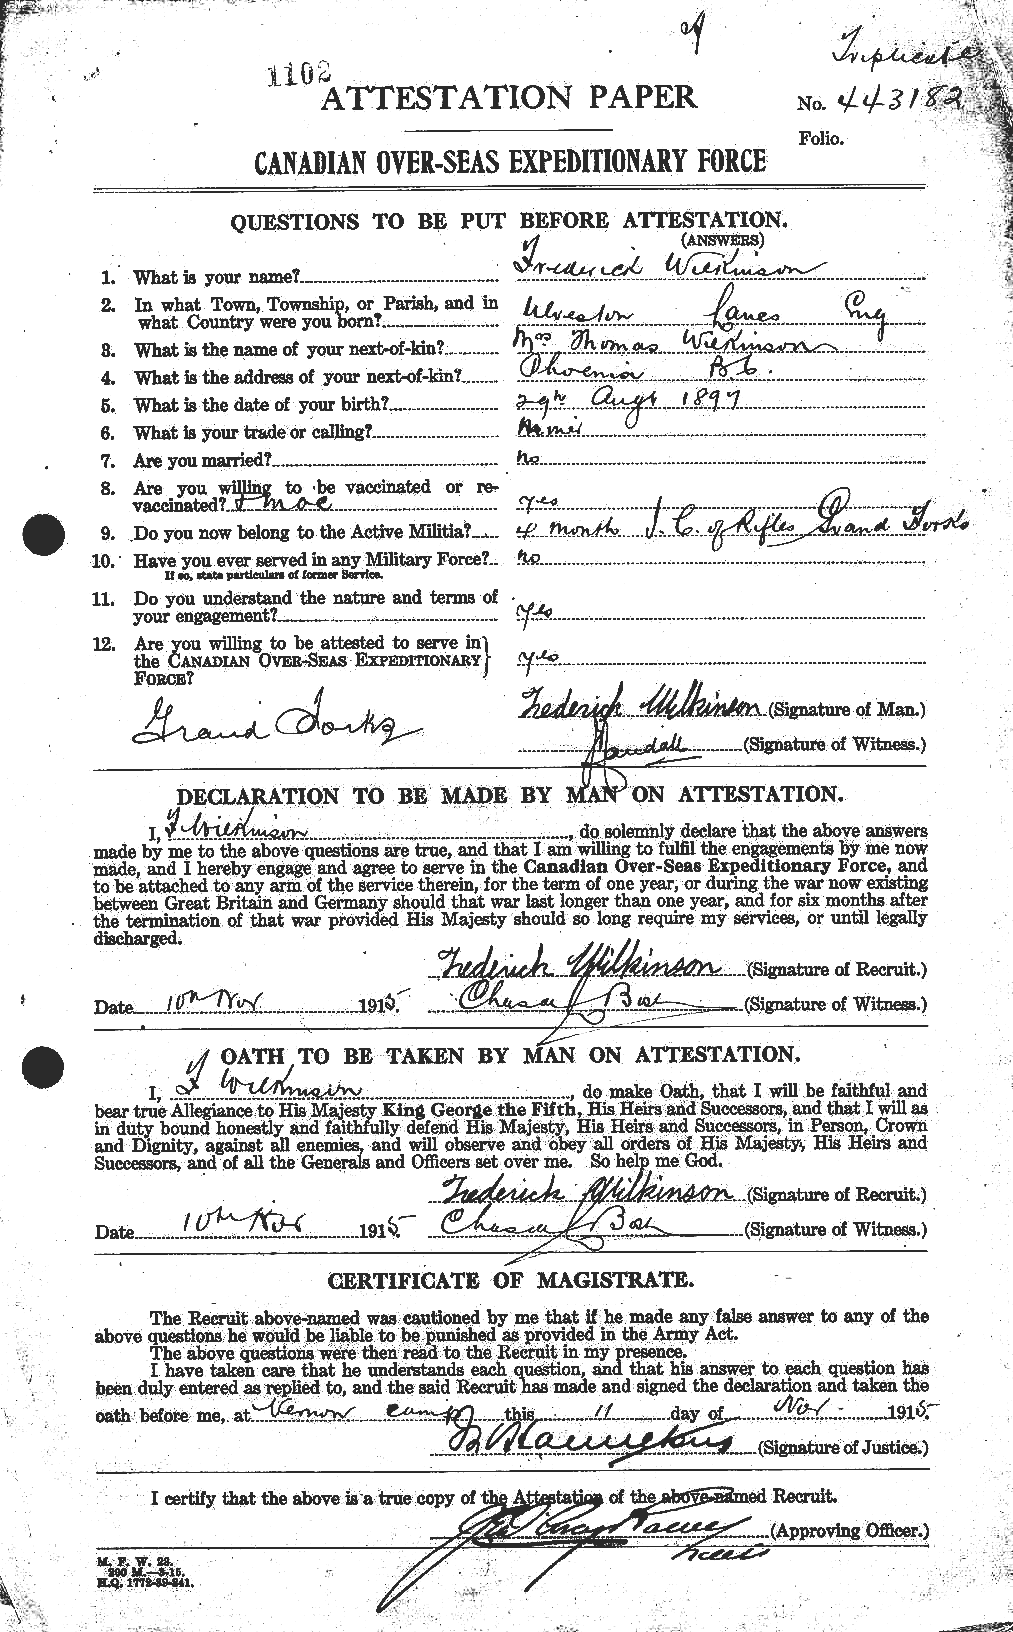 Dossiers du Personnel de la Première Guerre mondiale - CEC 673202a